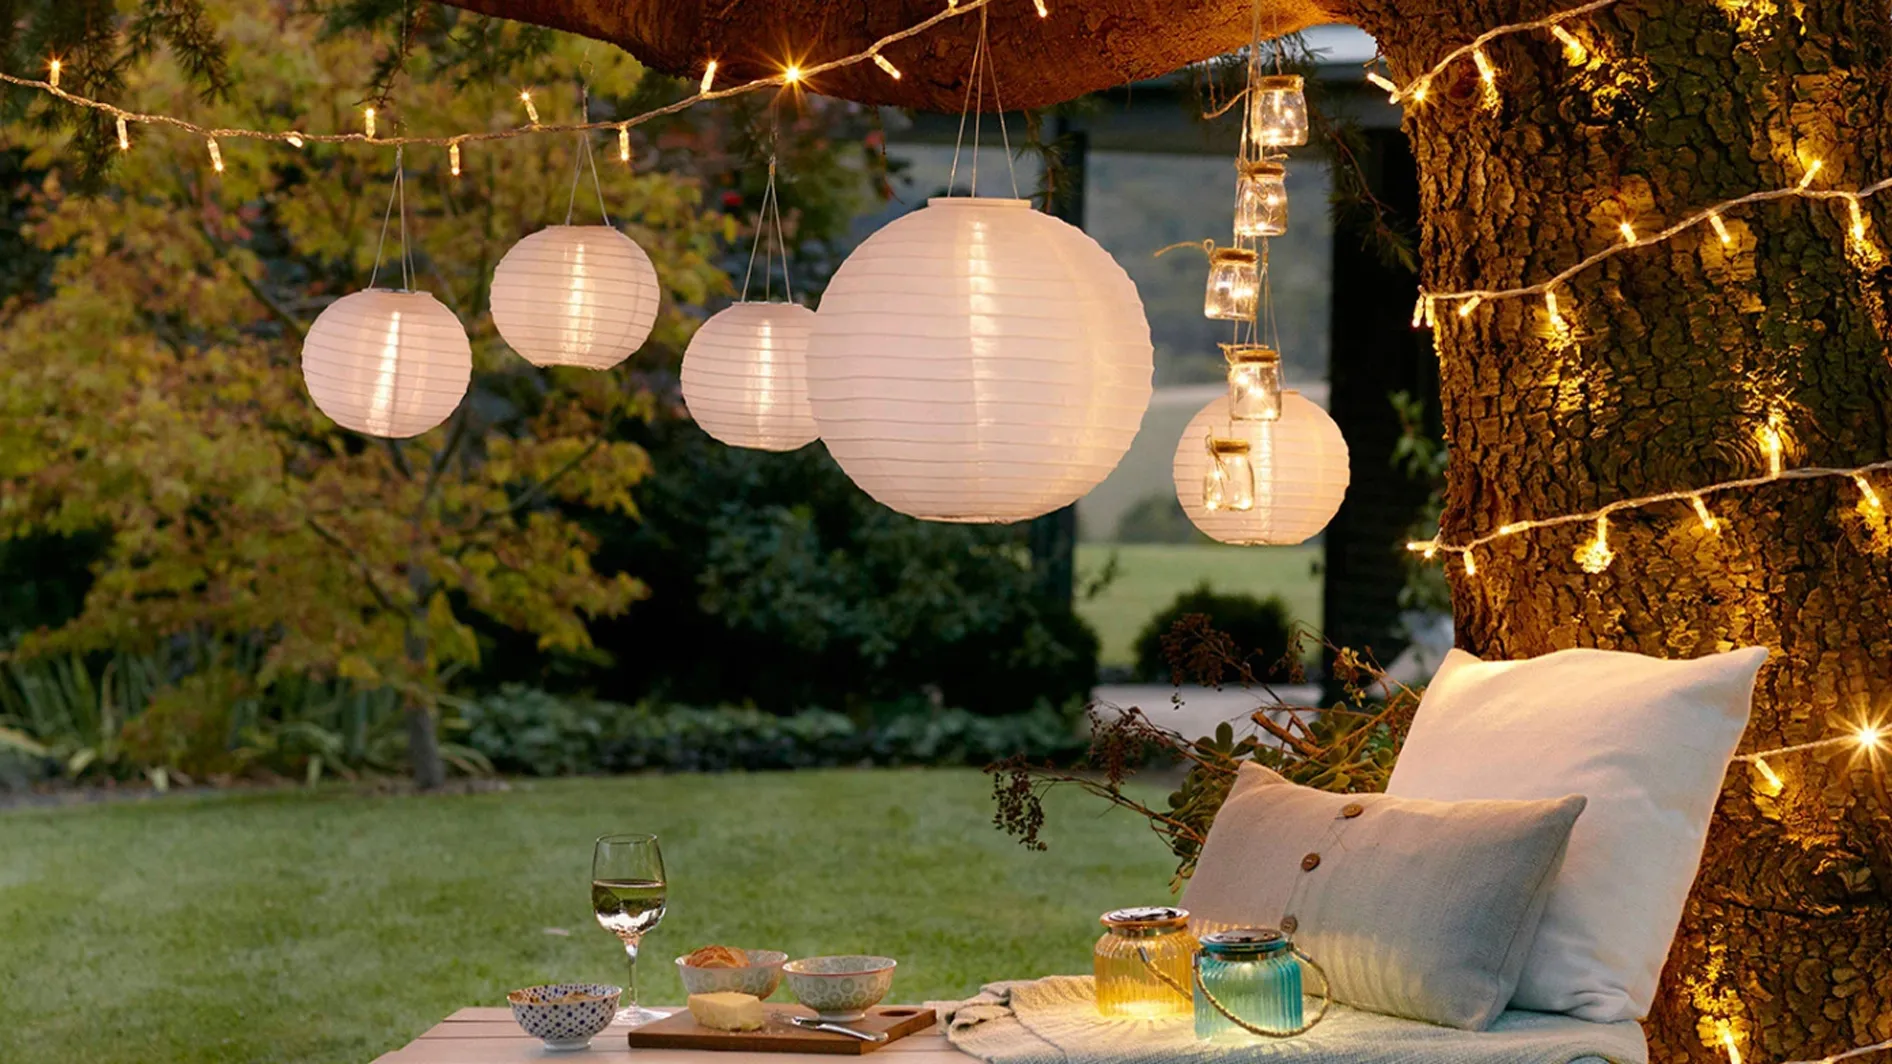 31 gorgeous garden lighting ideas – to brighten your back yard